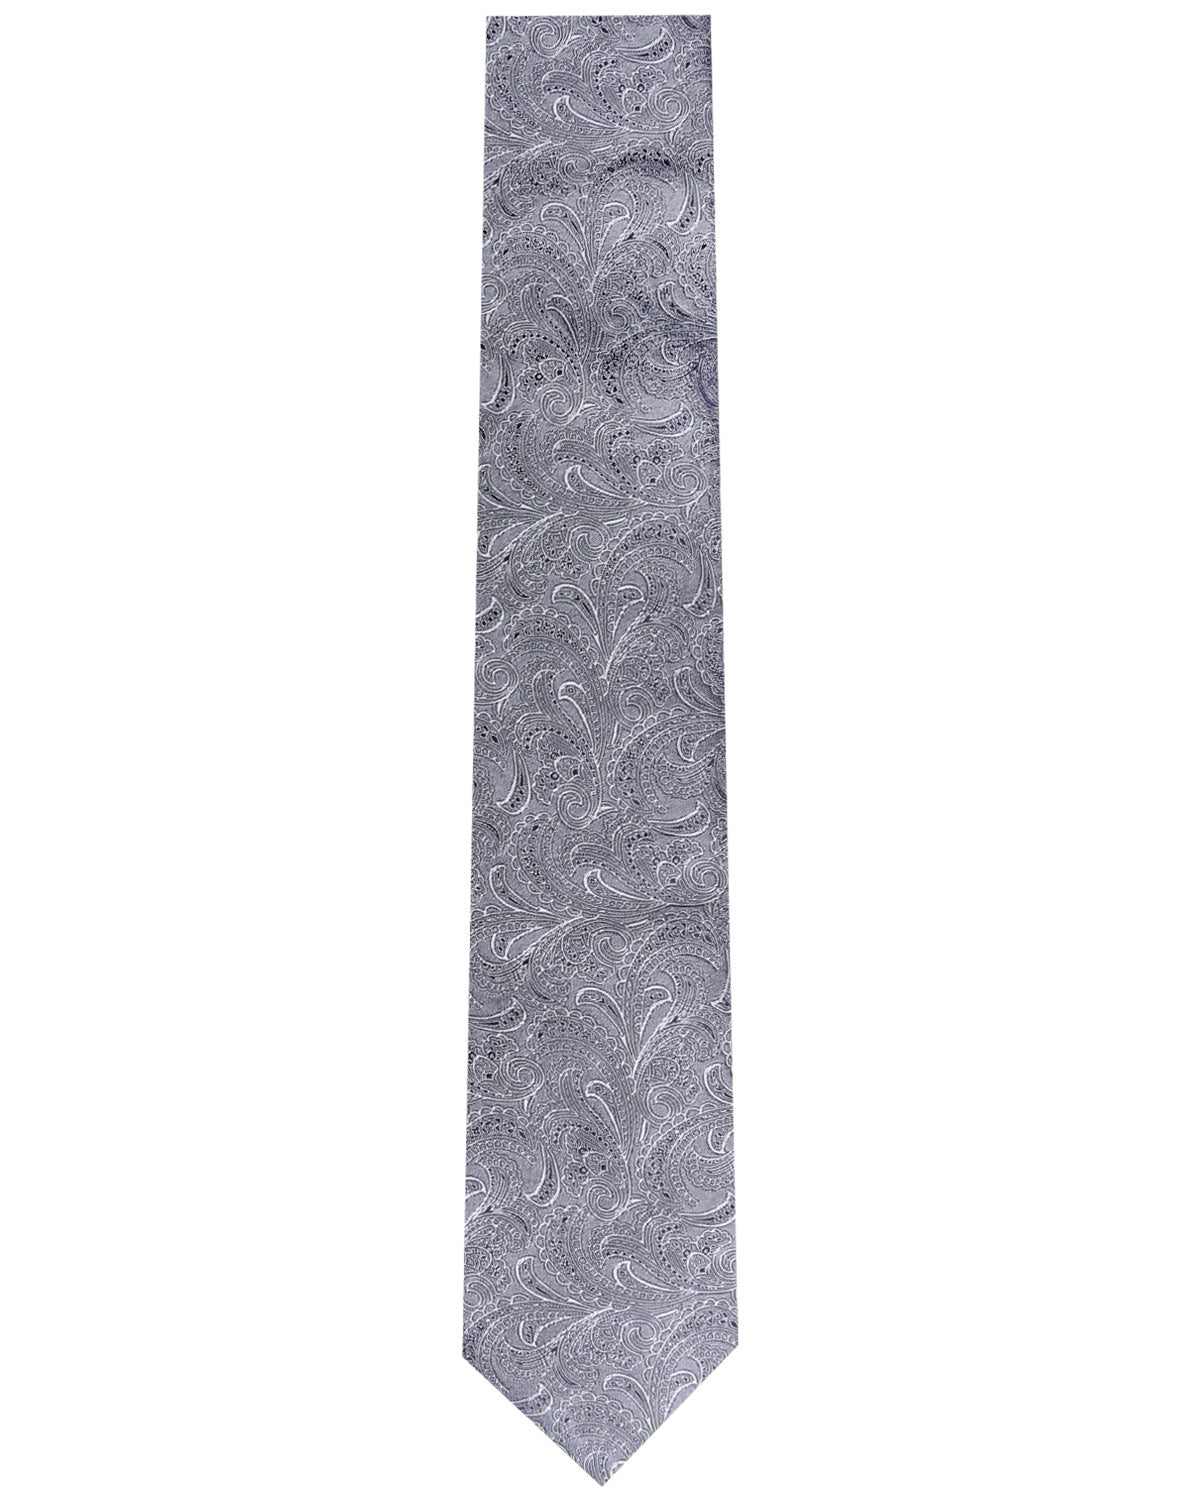 Medium Grey Silk Tie